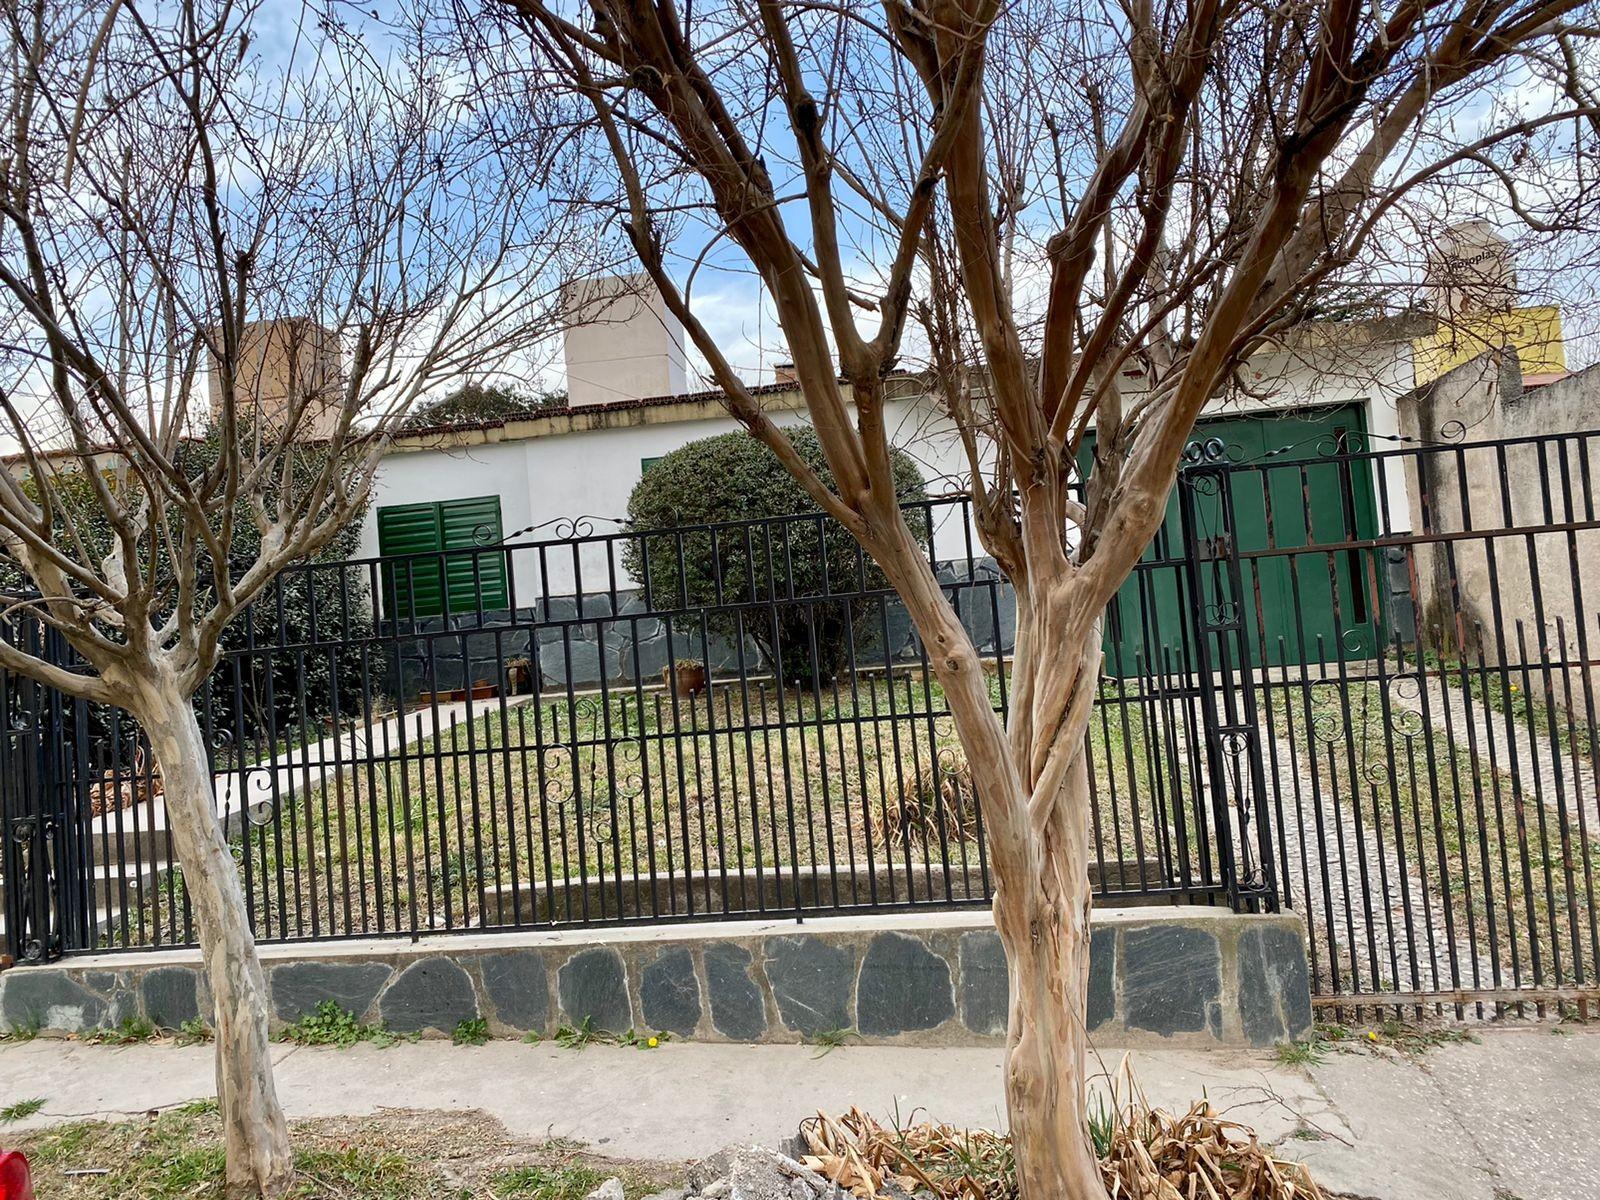 Casa 2 Dormitorios, Quincho y Jardín , Zona Rn 38. La Falda, Córdoba